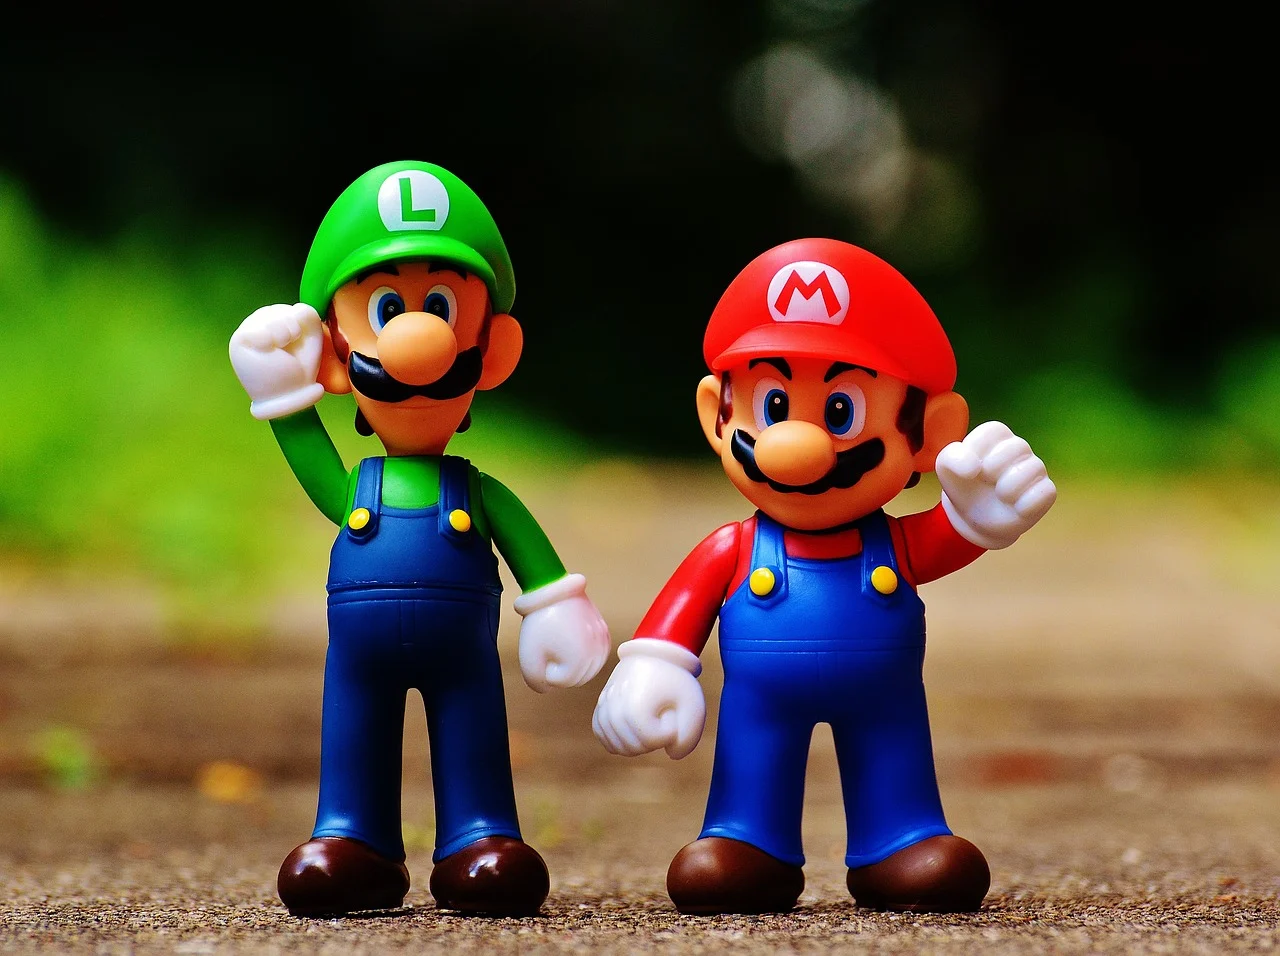 Иллюстрация рубрики: Звуки из игры Mario (Марио)